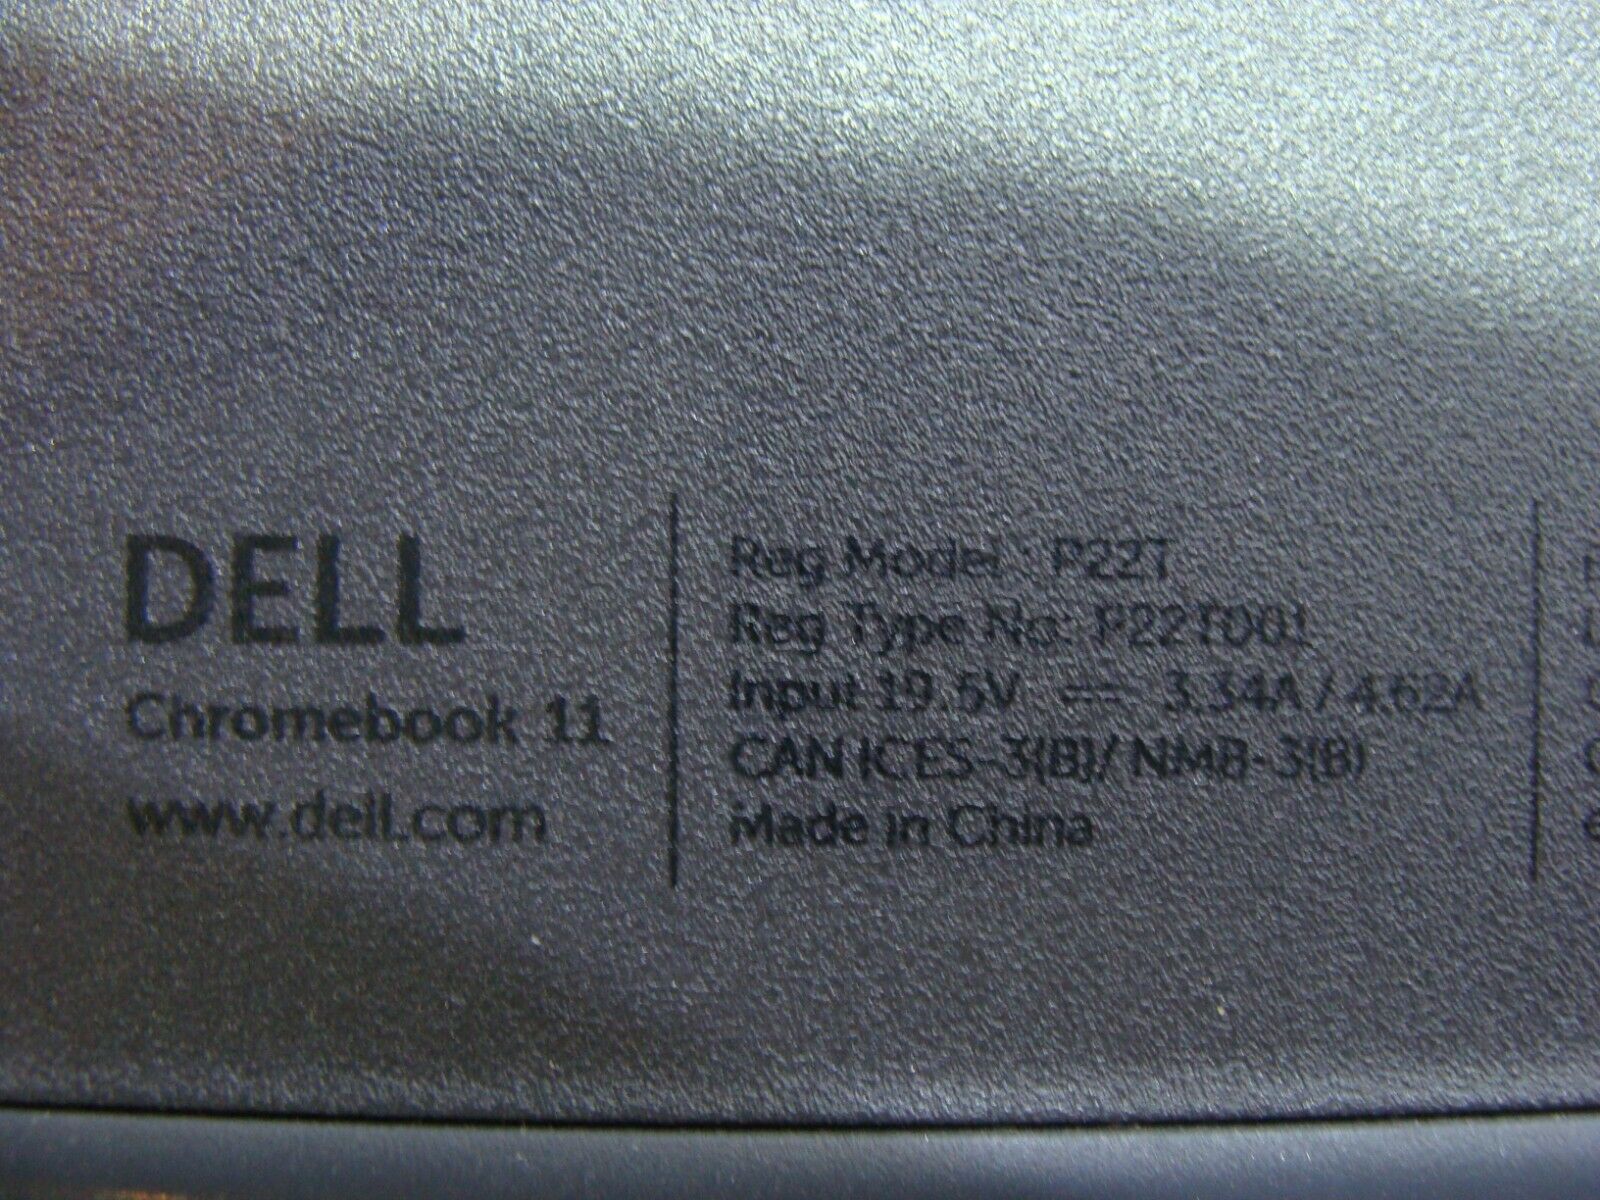 Dell Chromebook 11.6